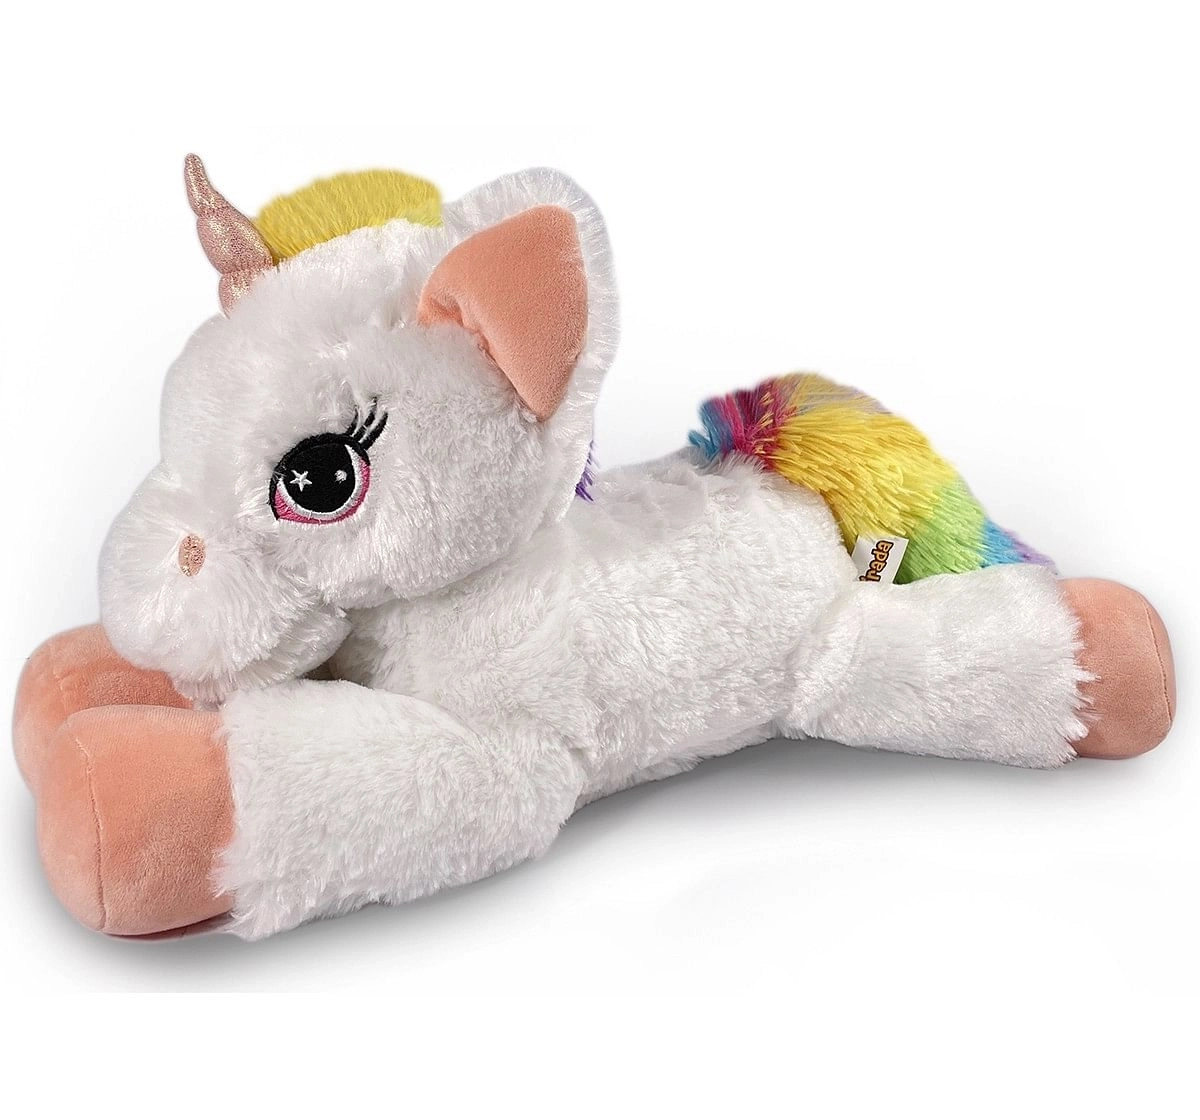 Mirada 52cm floppy unicorn with multicolor paws Multicolor 3Y+